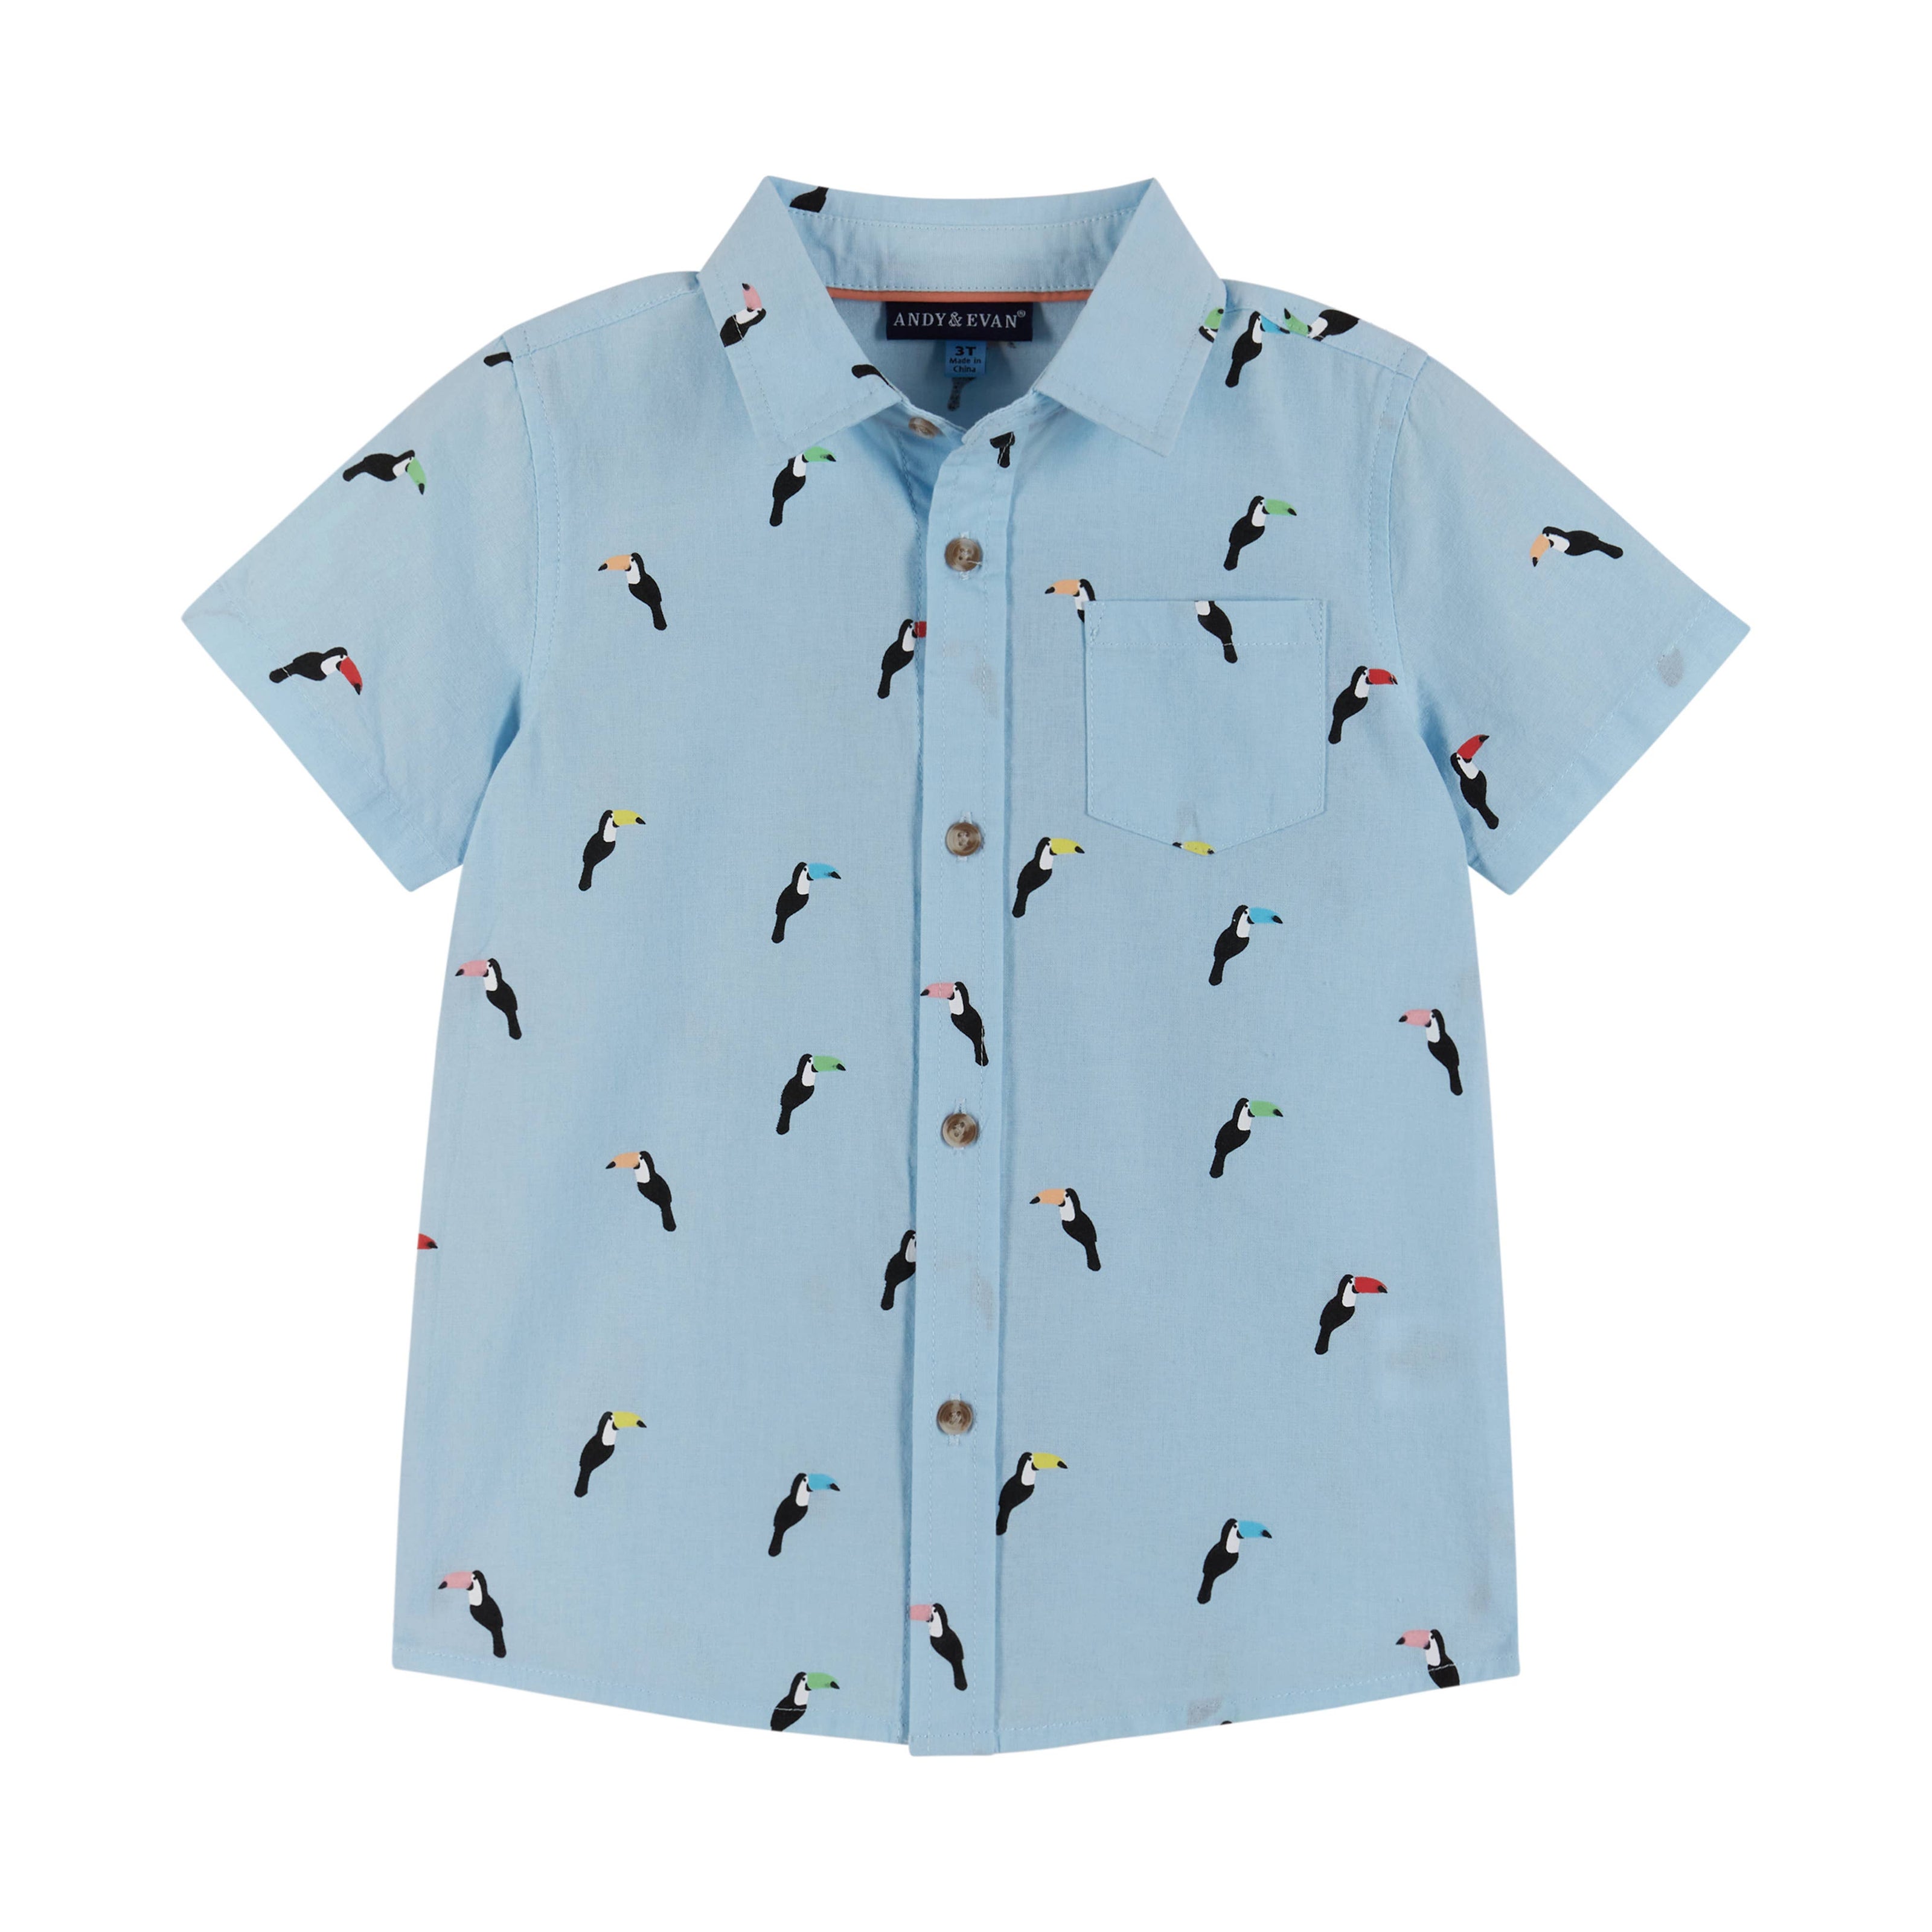 Boys Toddler Woven Short Sleeve Buttondown Shirt & Short